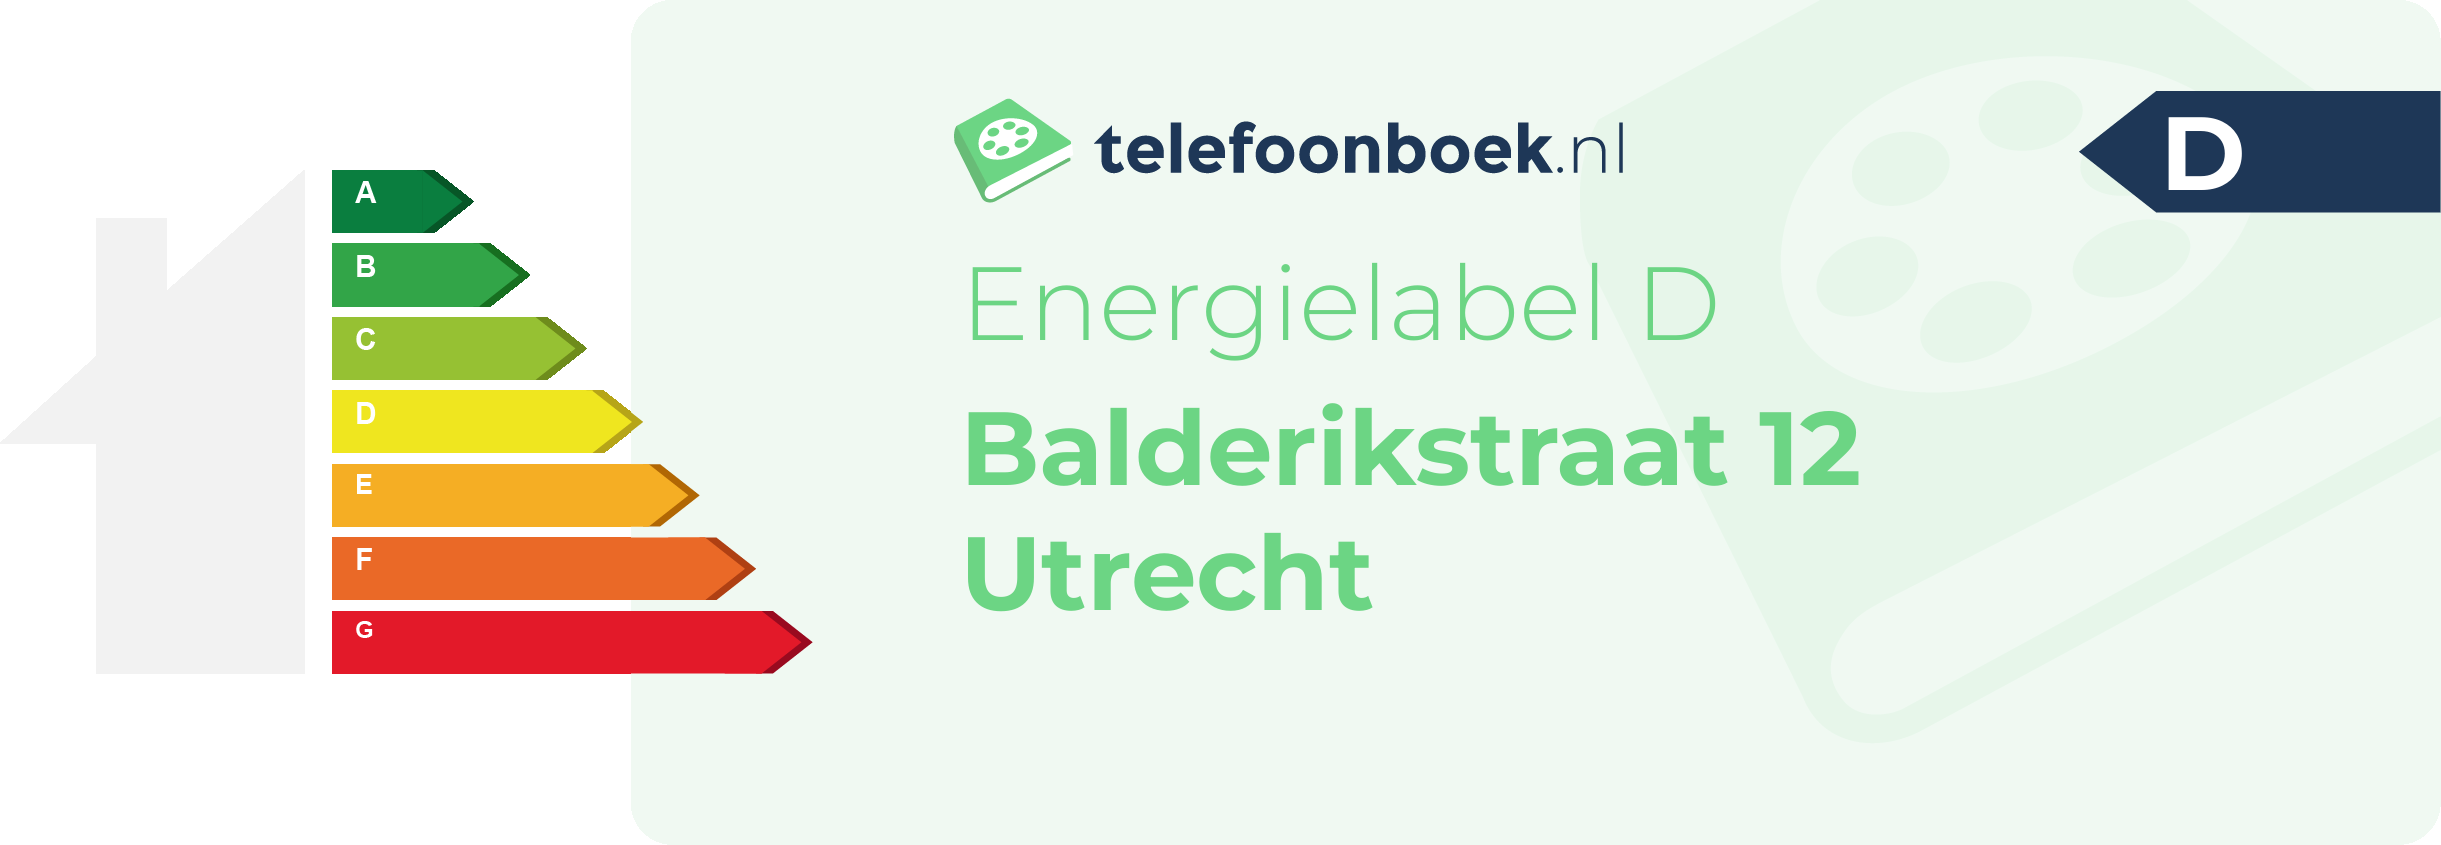 Energielabel Balderikstraat 12 Utrecht